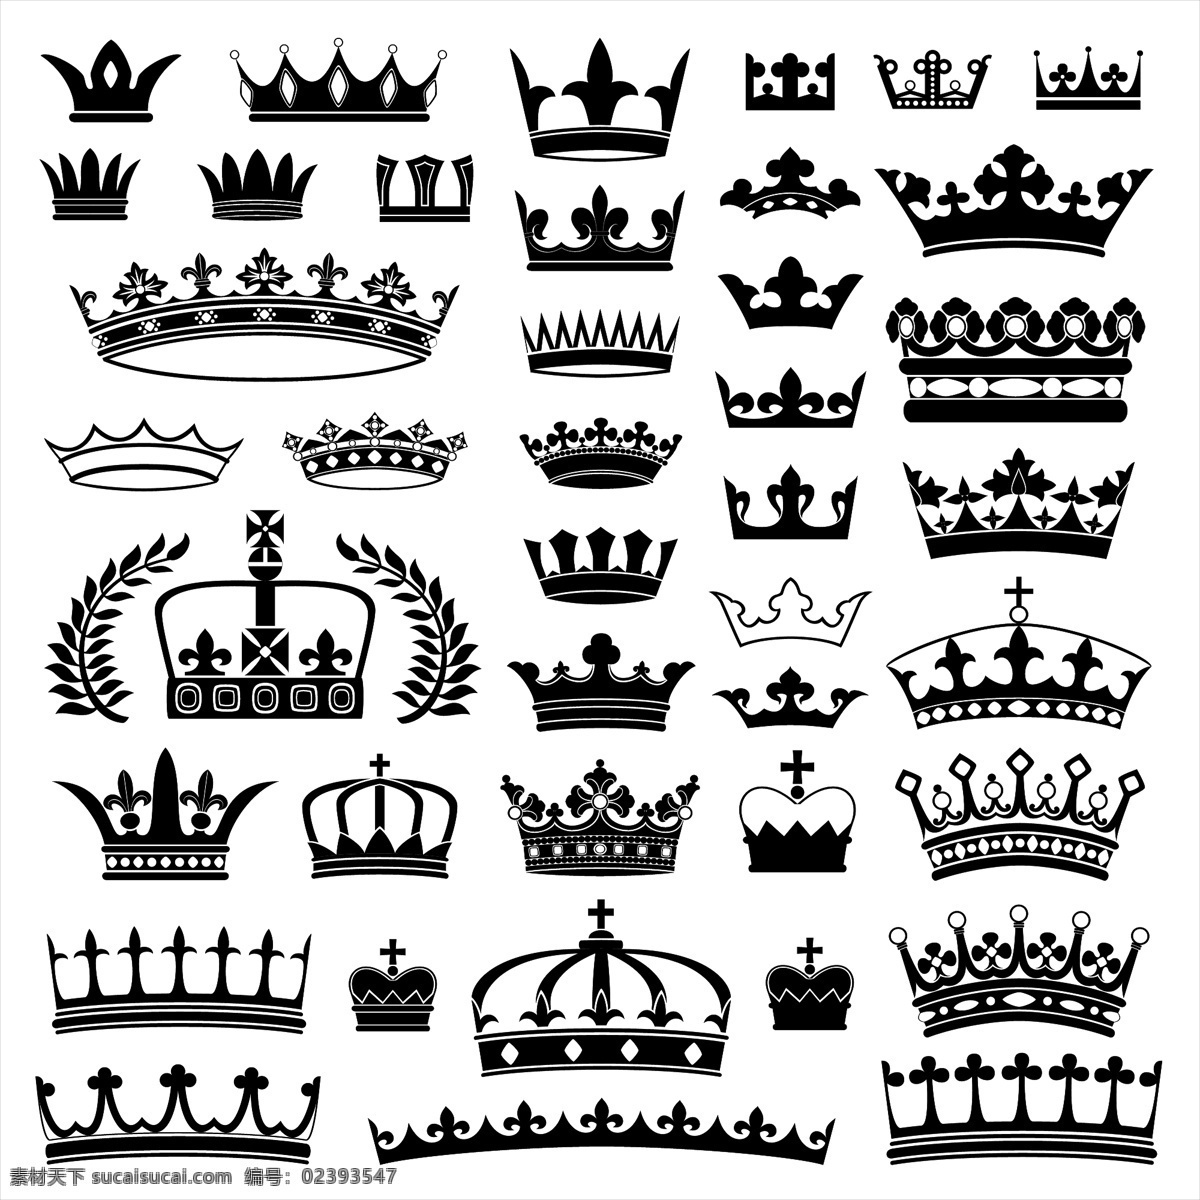 皇冠 欧式皇冠 头盔 权力 皇冠图标 标签 王冠 皇家 皇族 矢量 标志图标 网页小图标 白色